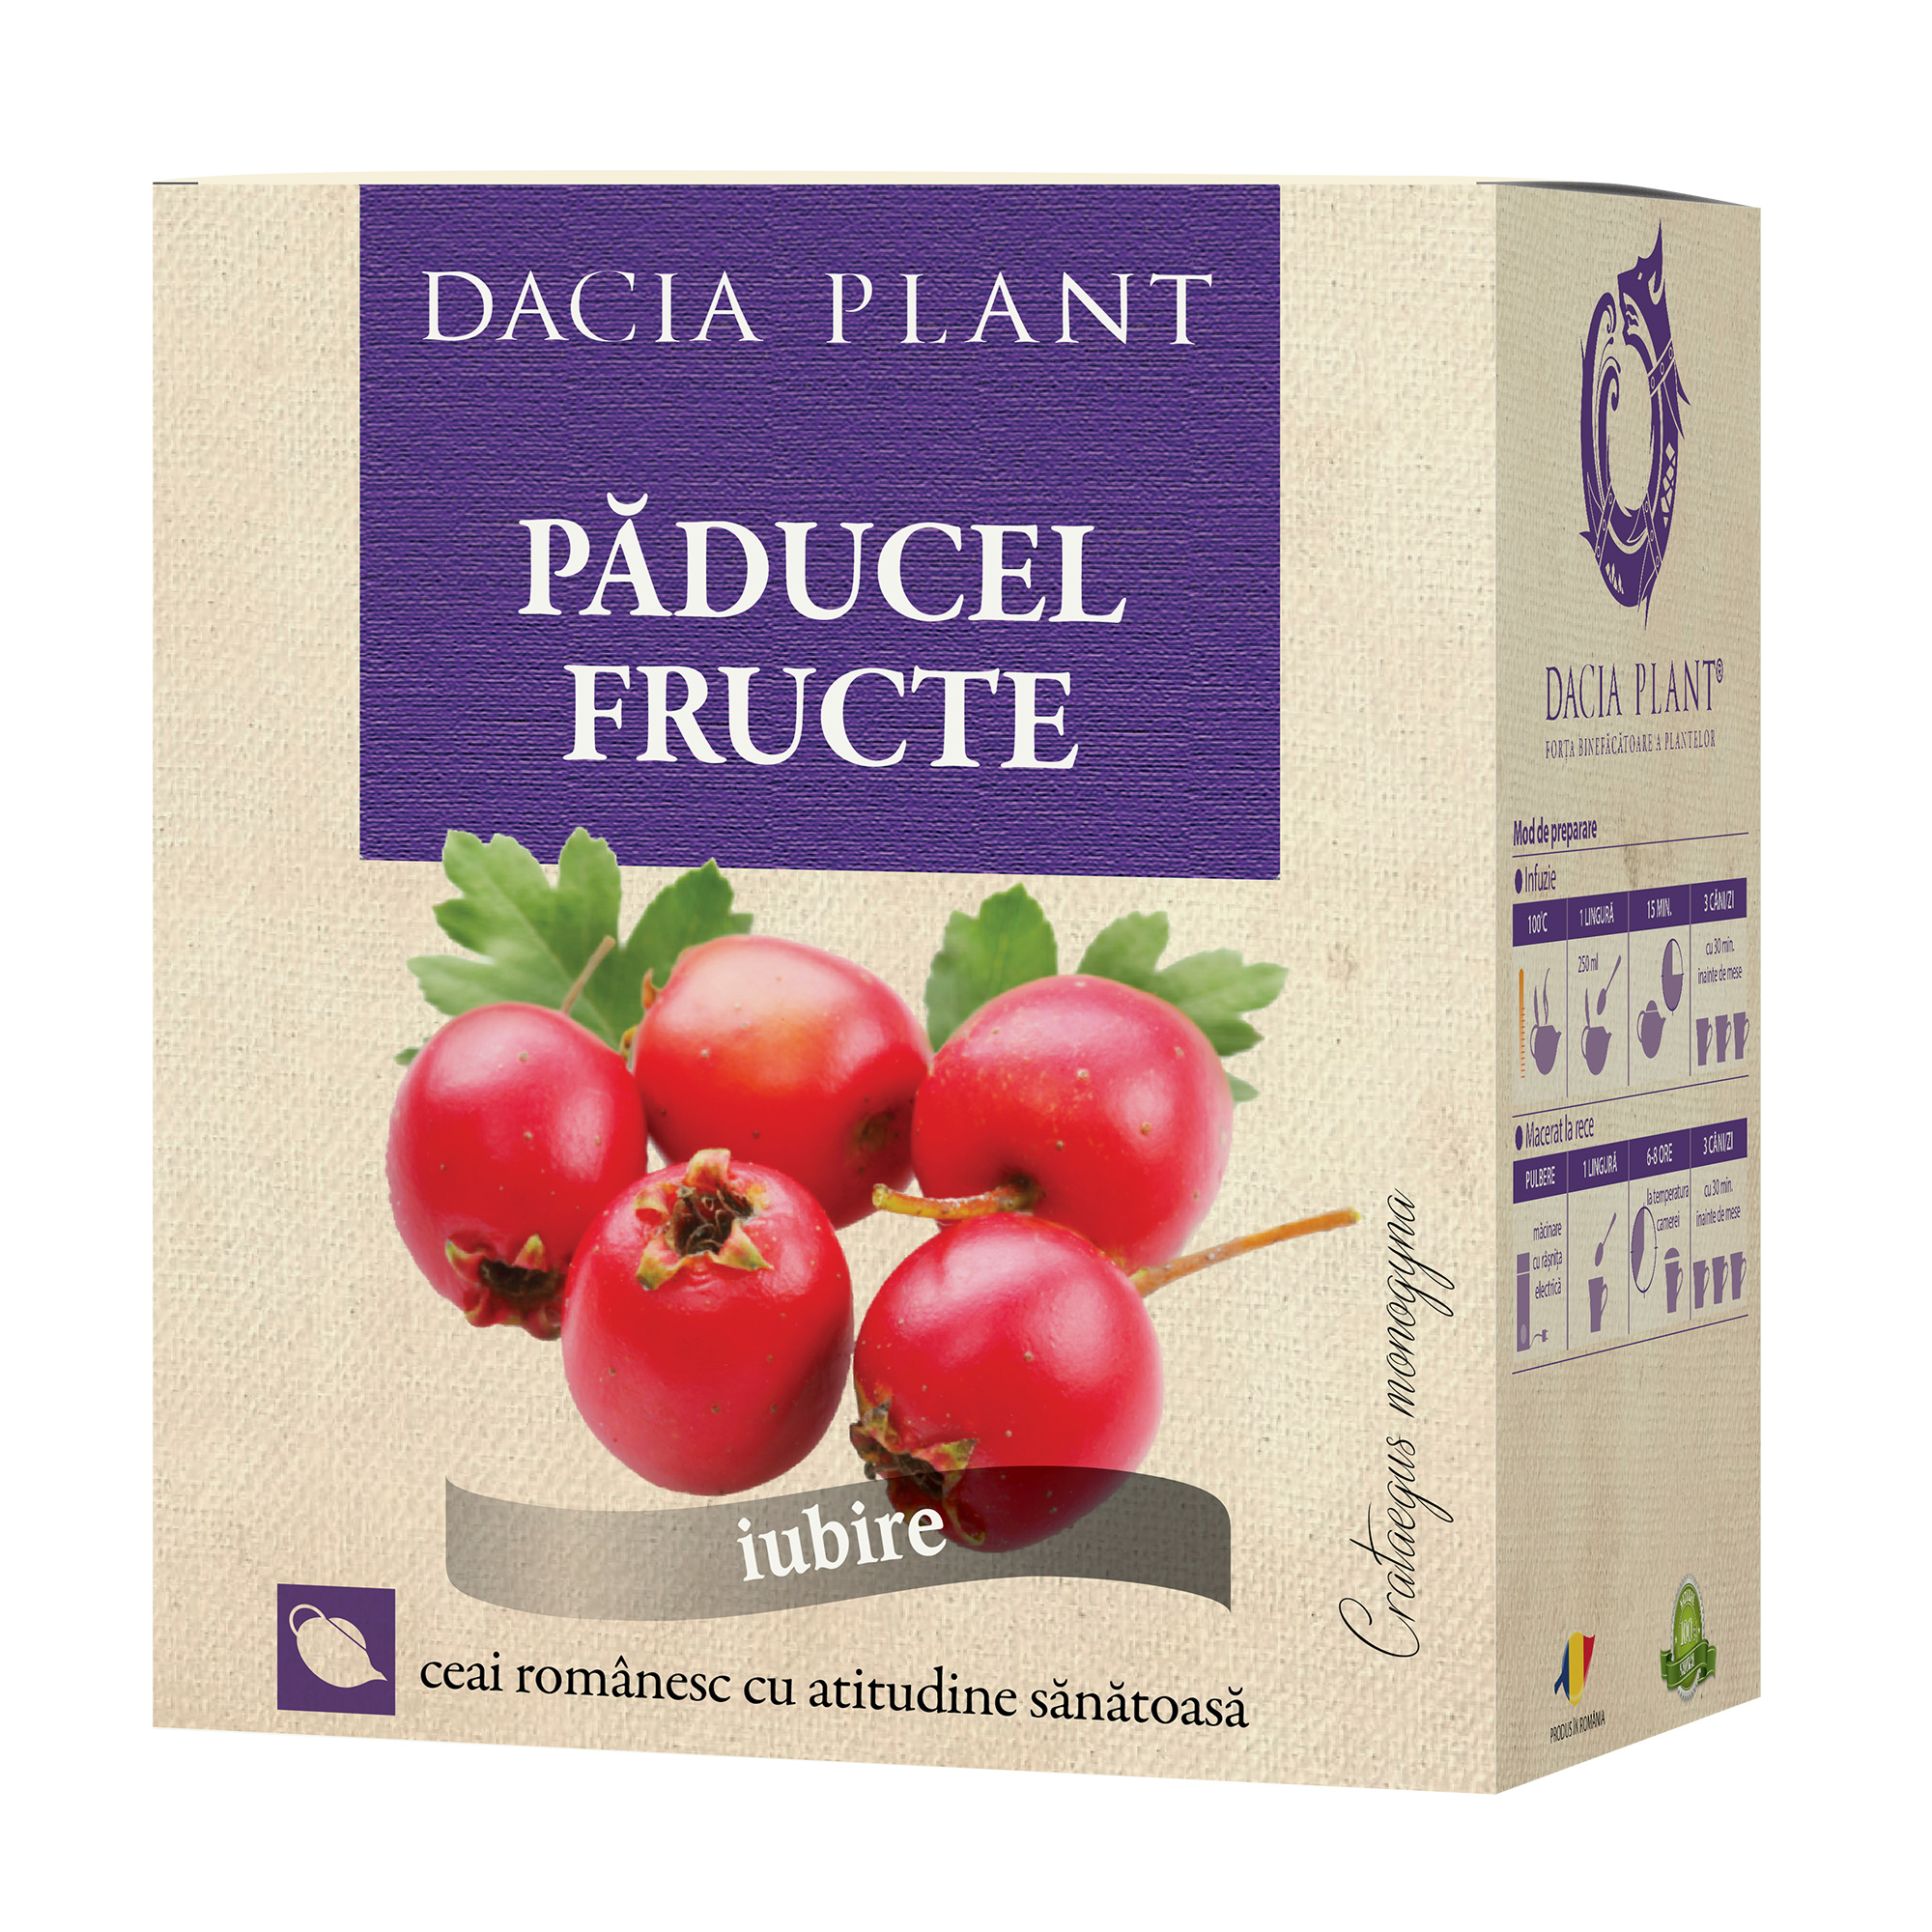 Ceai de Paducel fructe Dacia Plant